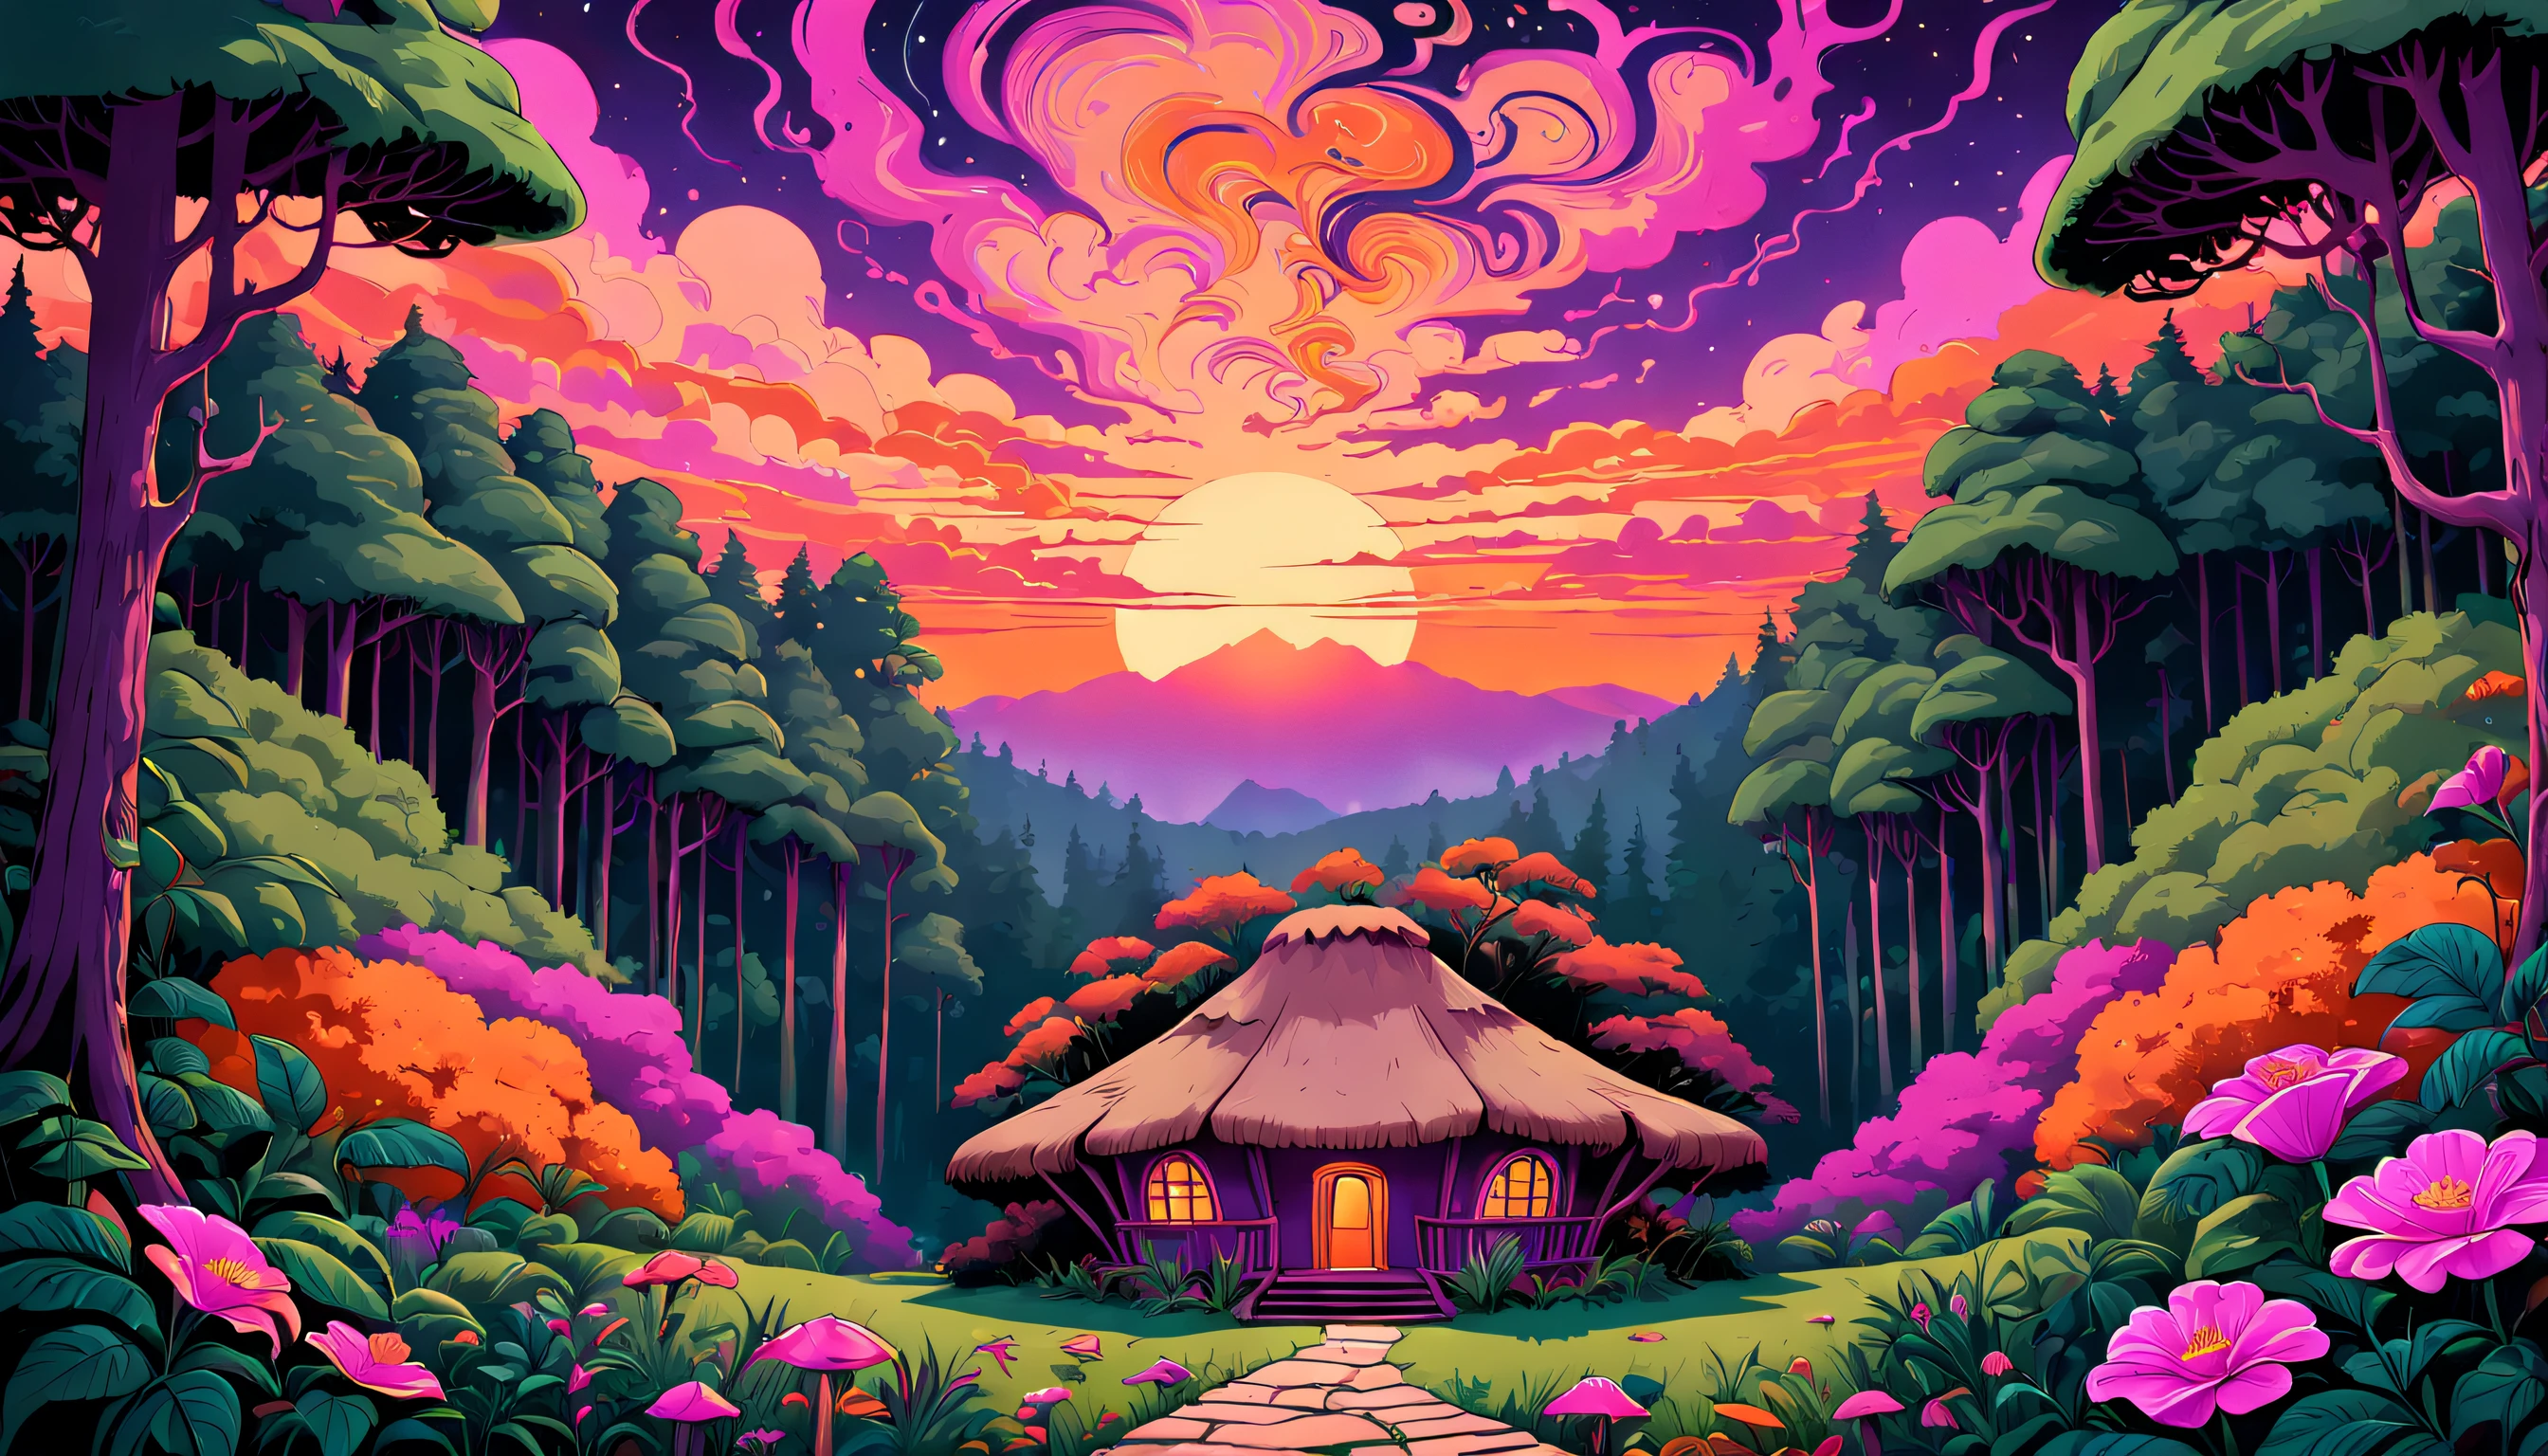 Misteriosa cabaña de montaña ubicada entre densos árboles y un pueblo en el medio, bosques psicodélicos, Con un impresionante cielo al atardecer que se vuelve vibrante, tonos cálidos de púrpura, rosa e laranja, creando una atmósfera de curiosidad e intriga.